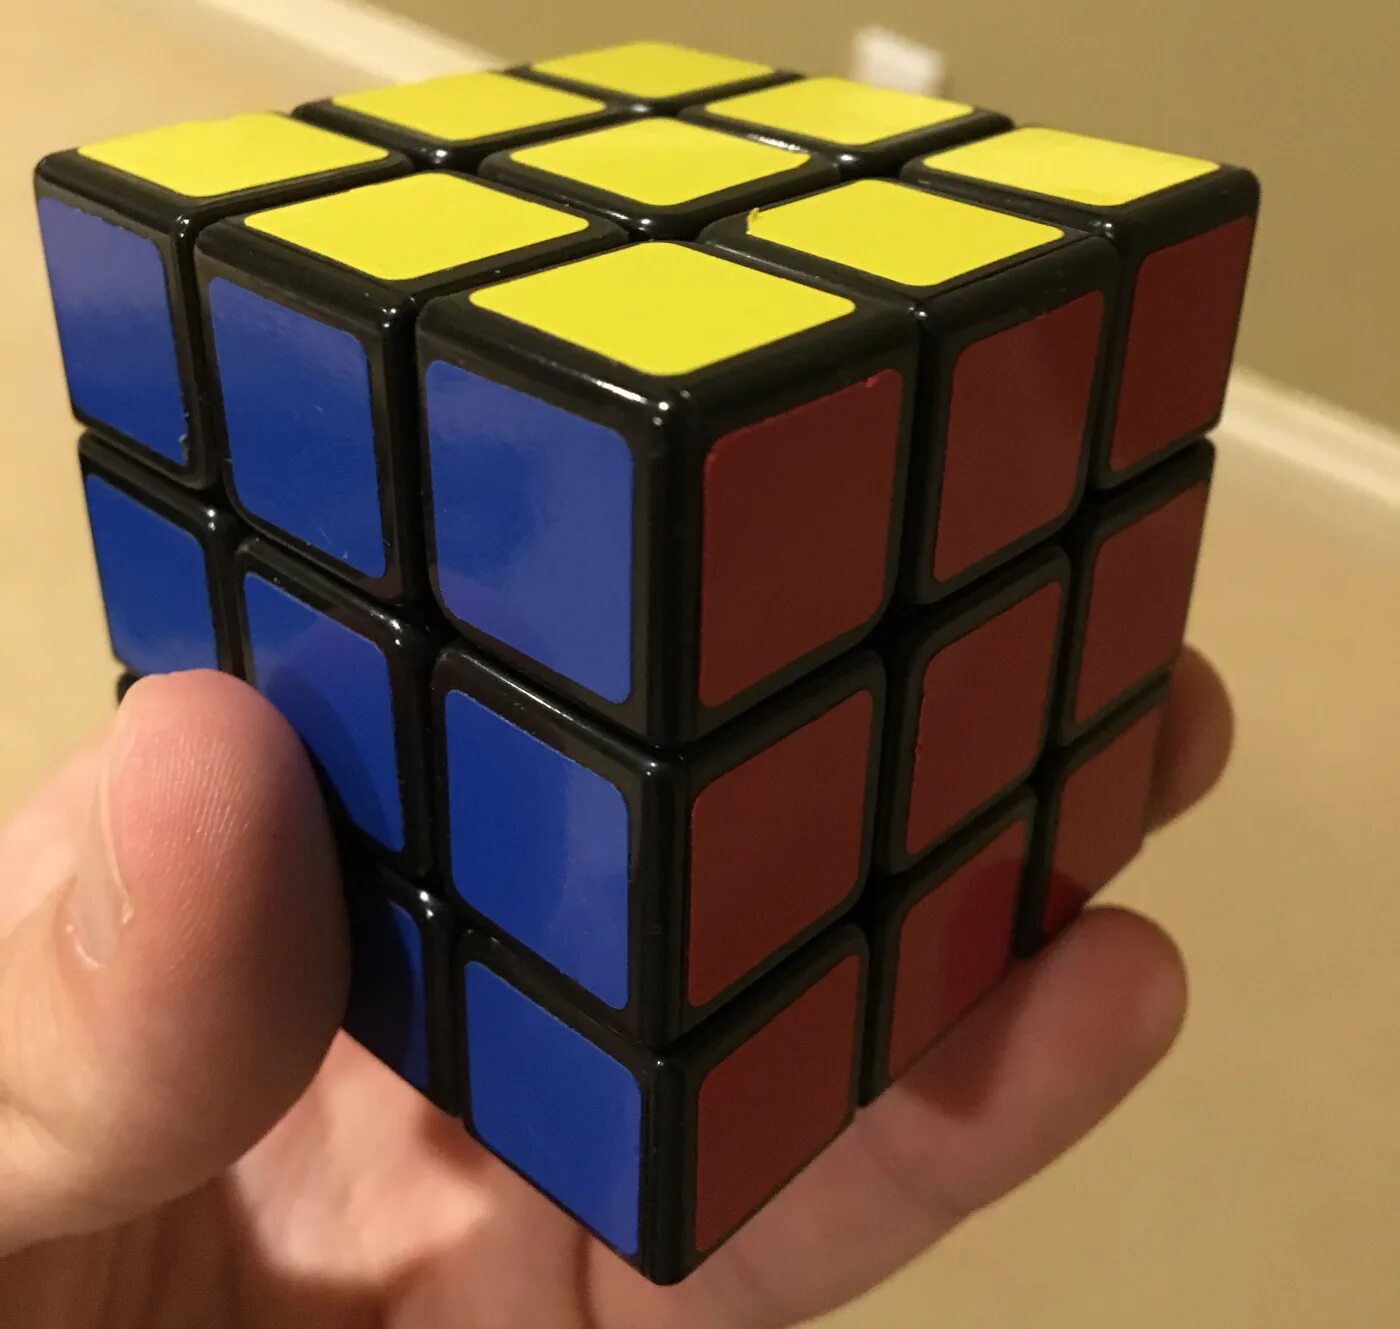 Цвета рубика. Пента кубик Рубика. Суперфлип кубик Рубика. Пятимерный кубик Рубика. Кубик Рубика 90-е.